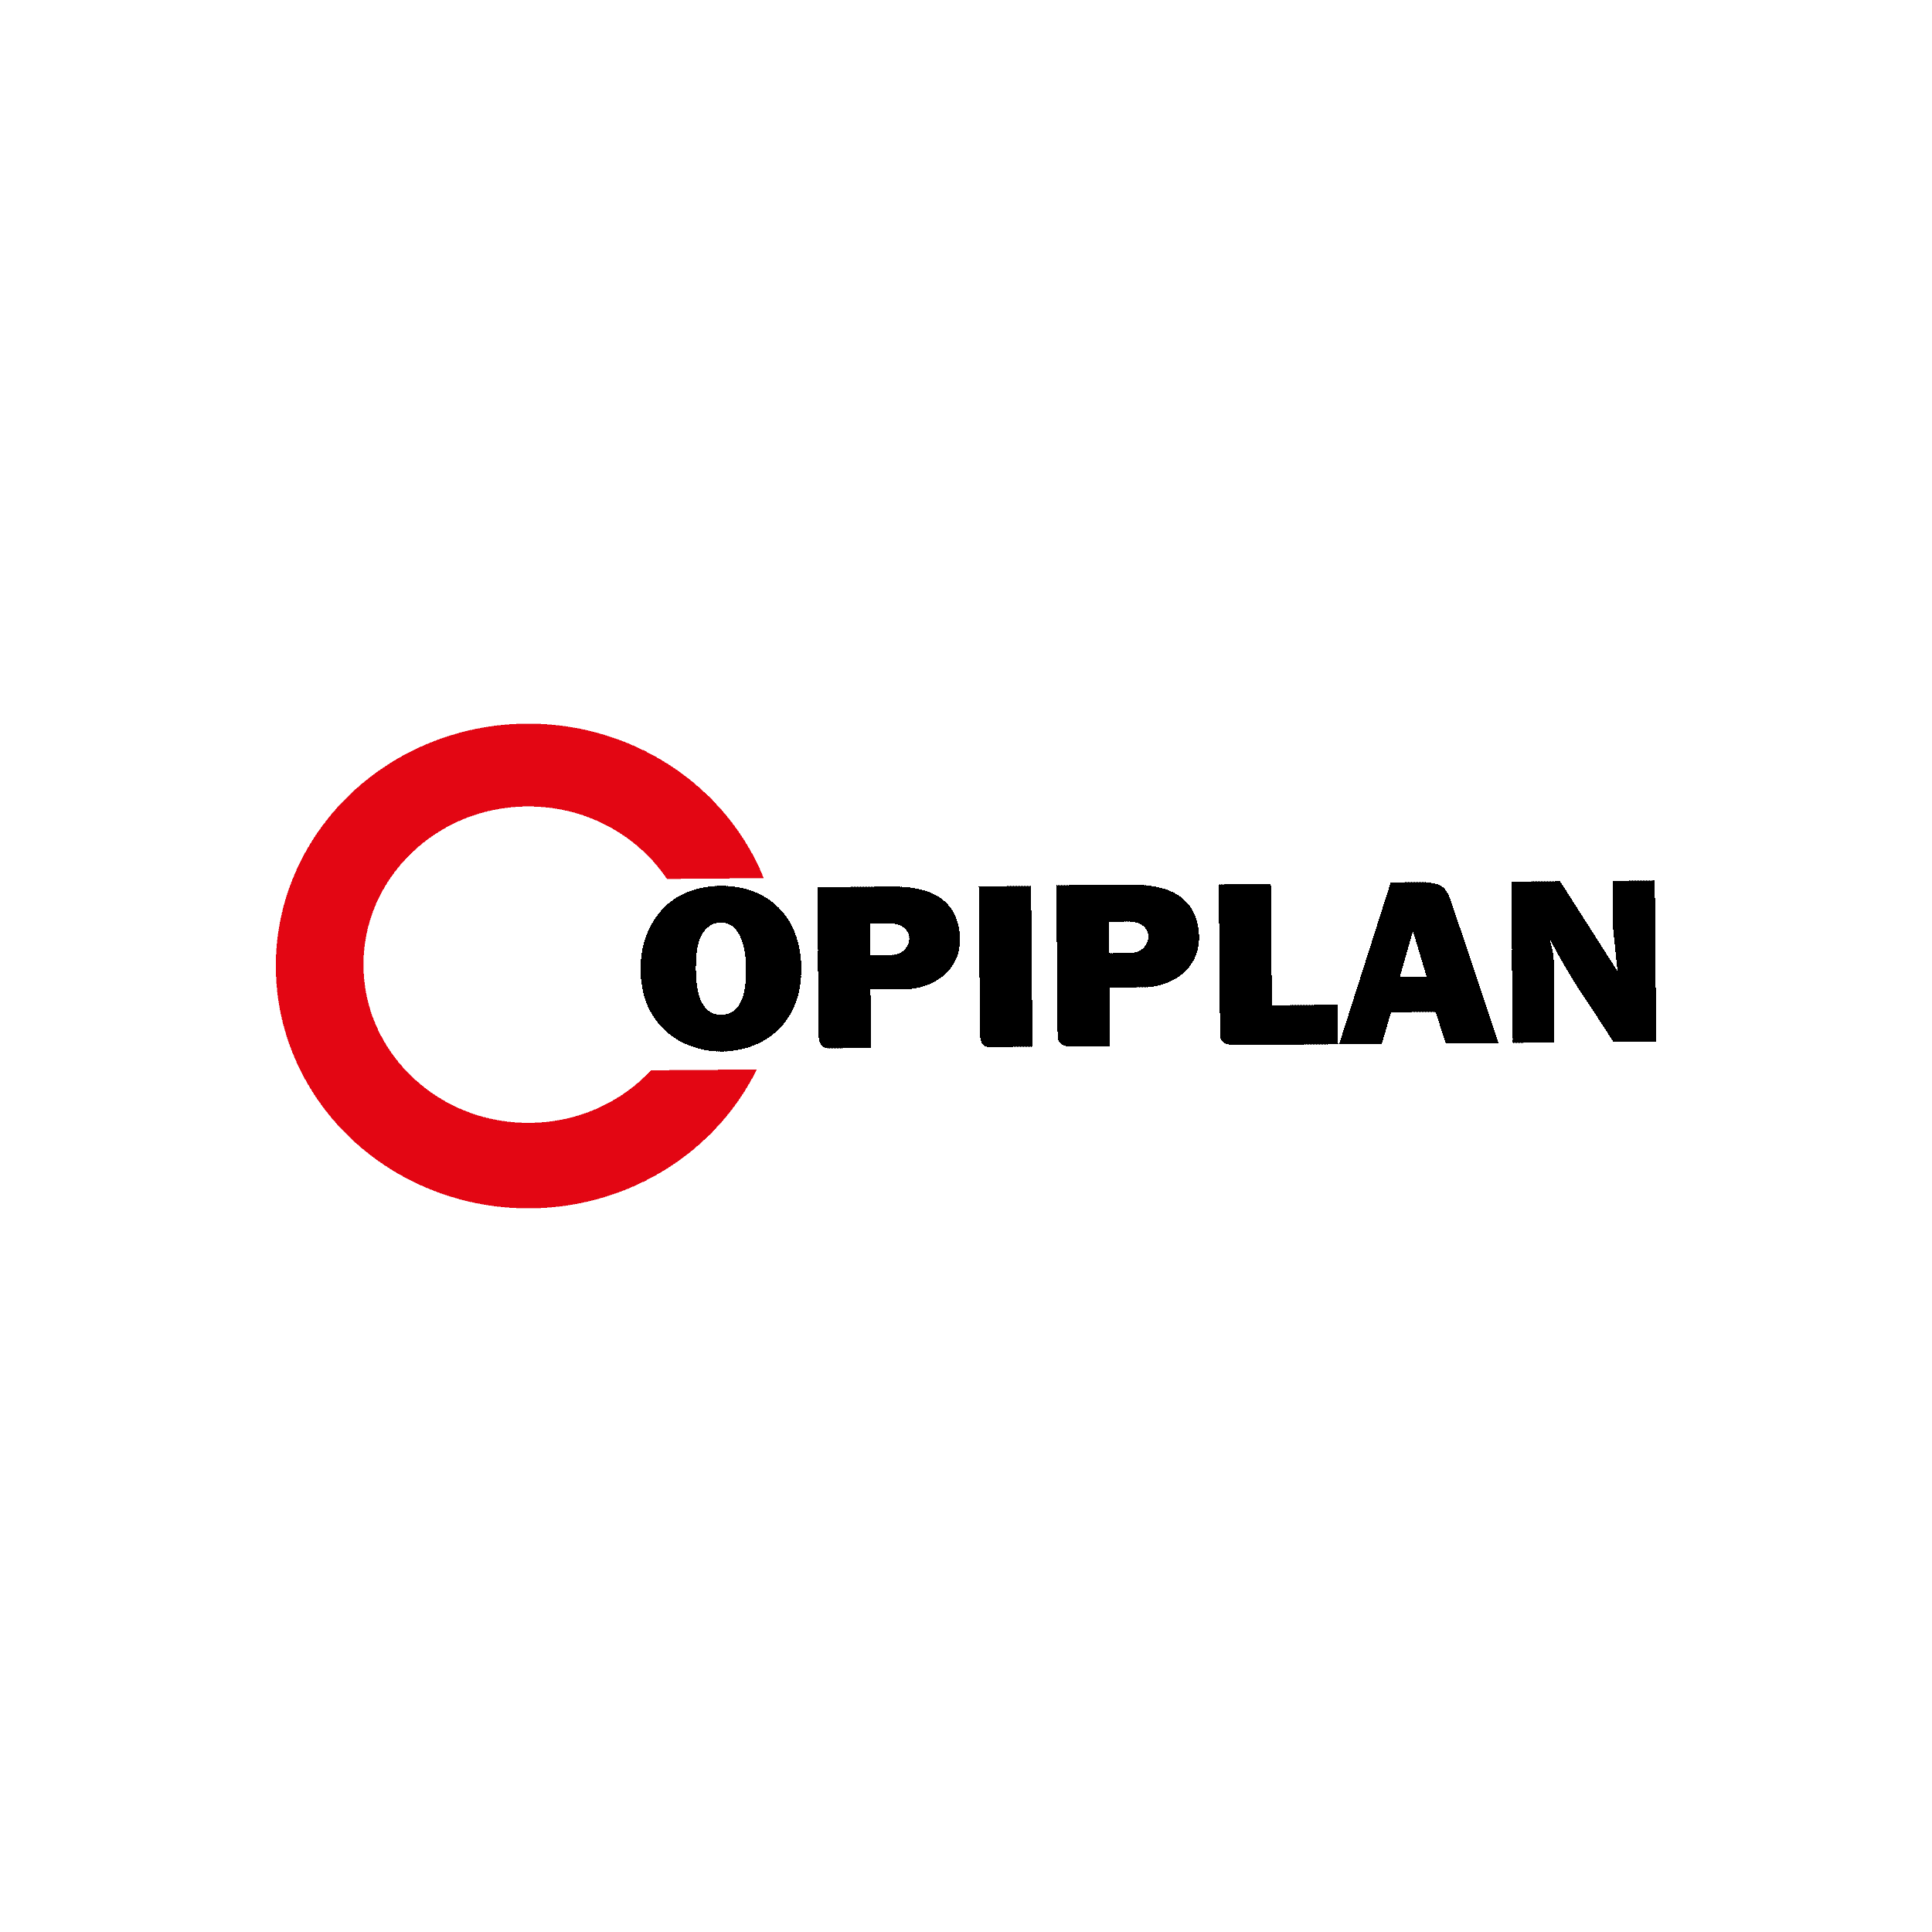 Logo-copiplan